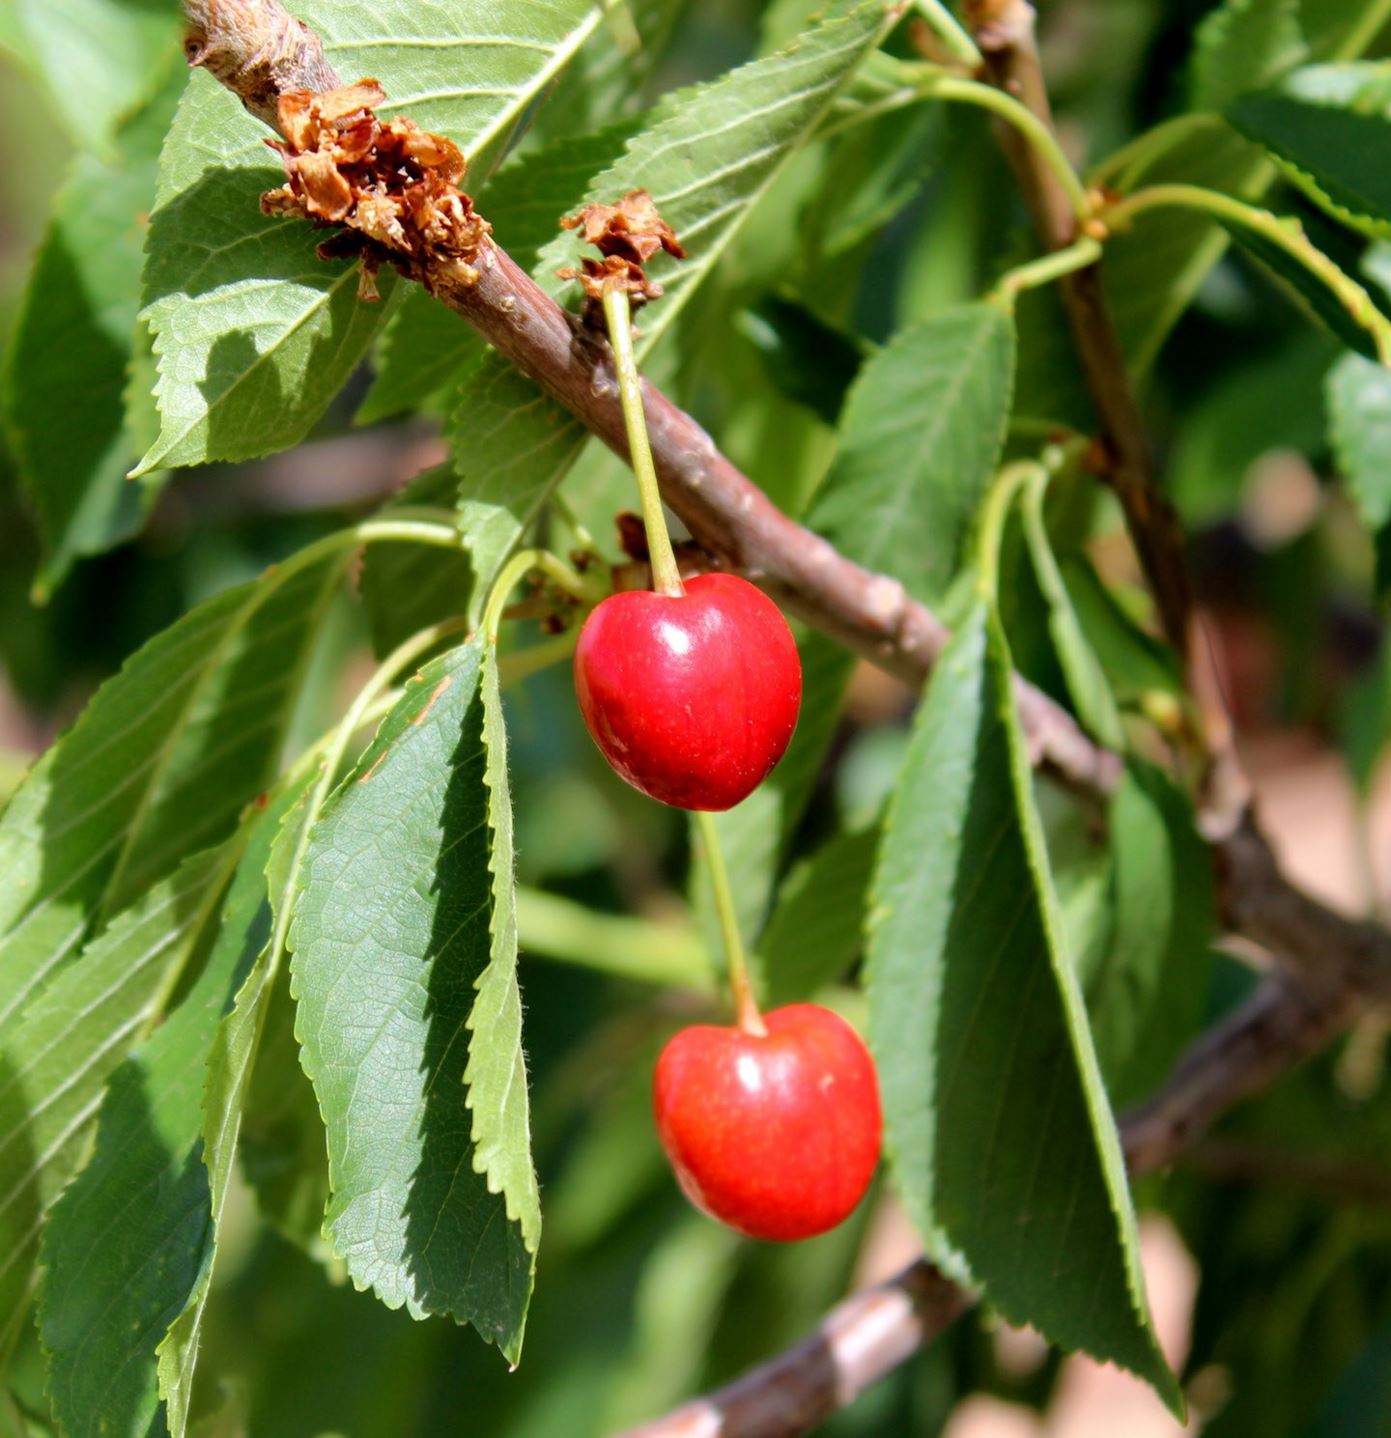 Prunus avium 'Black Gold' - 'Black Gold' cherry